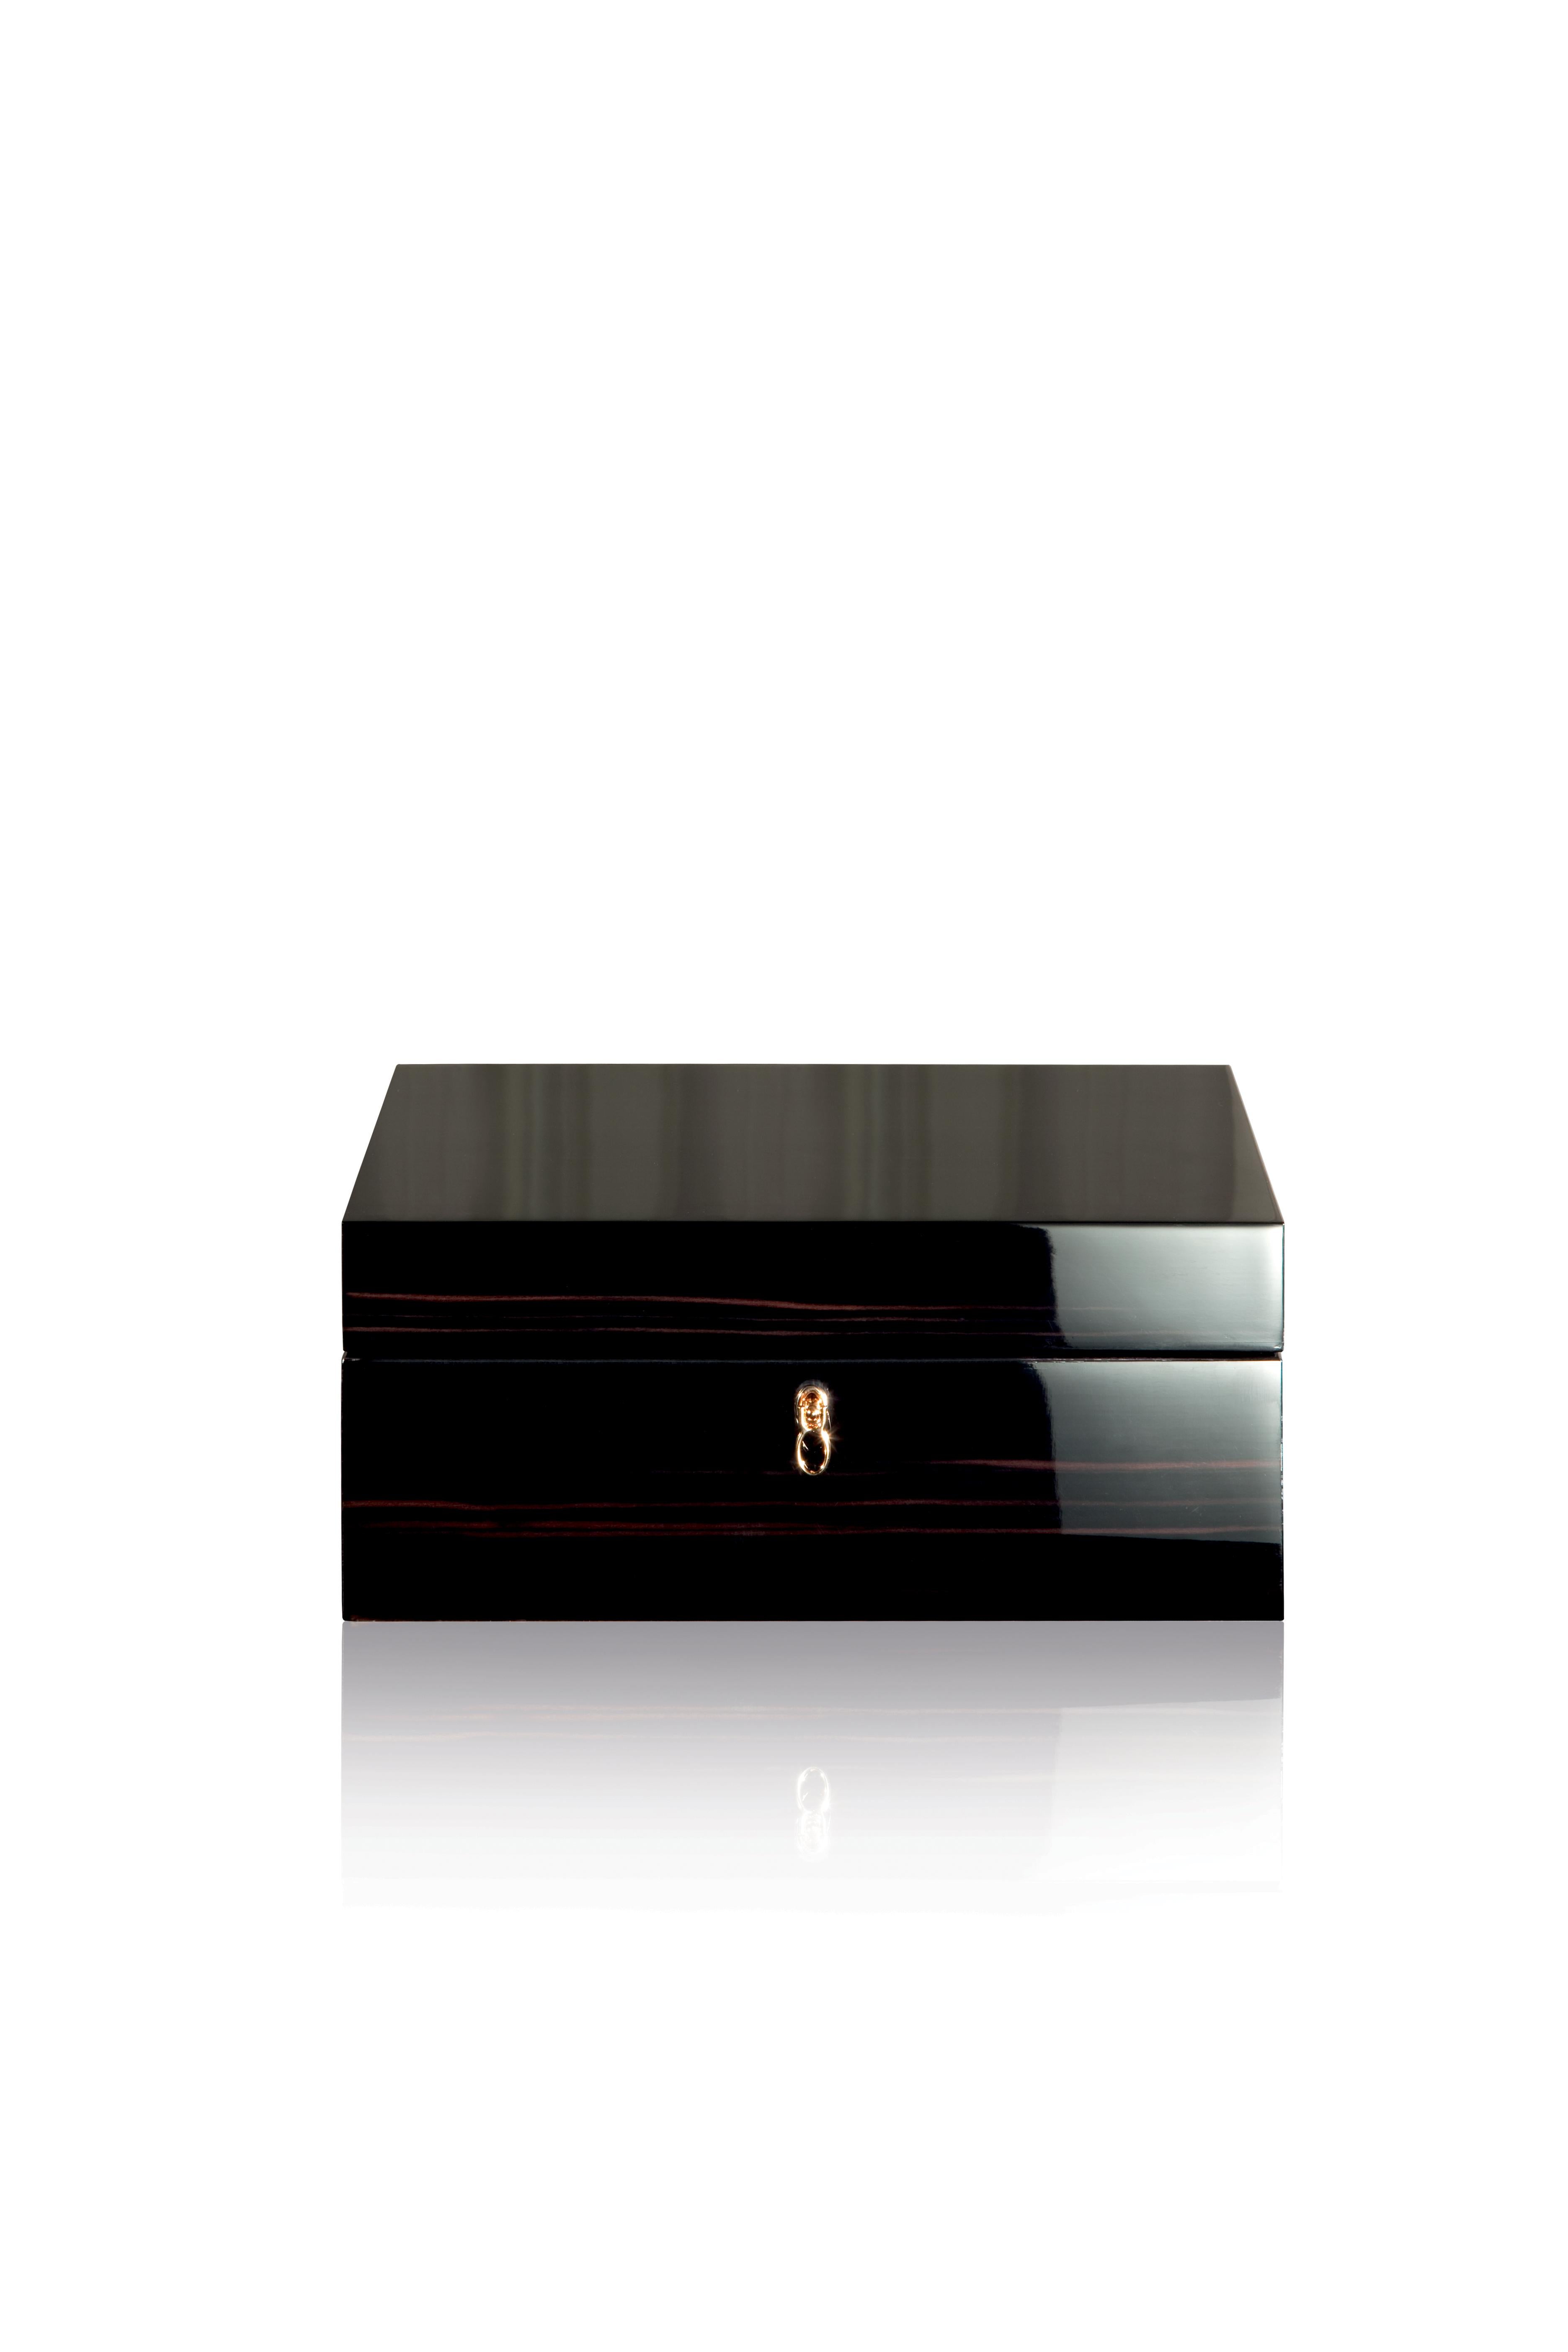 For Sale: Black (Ebony) Agresti Il Cofanetto Jewelry Box